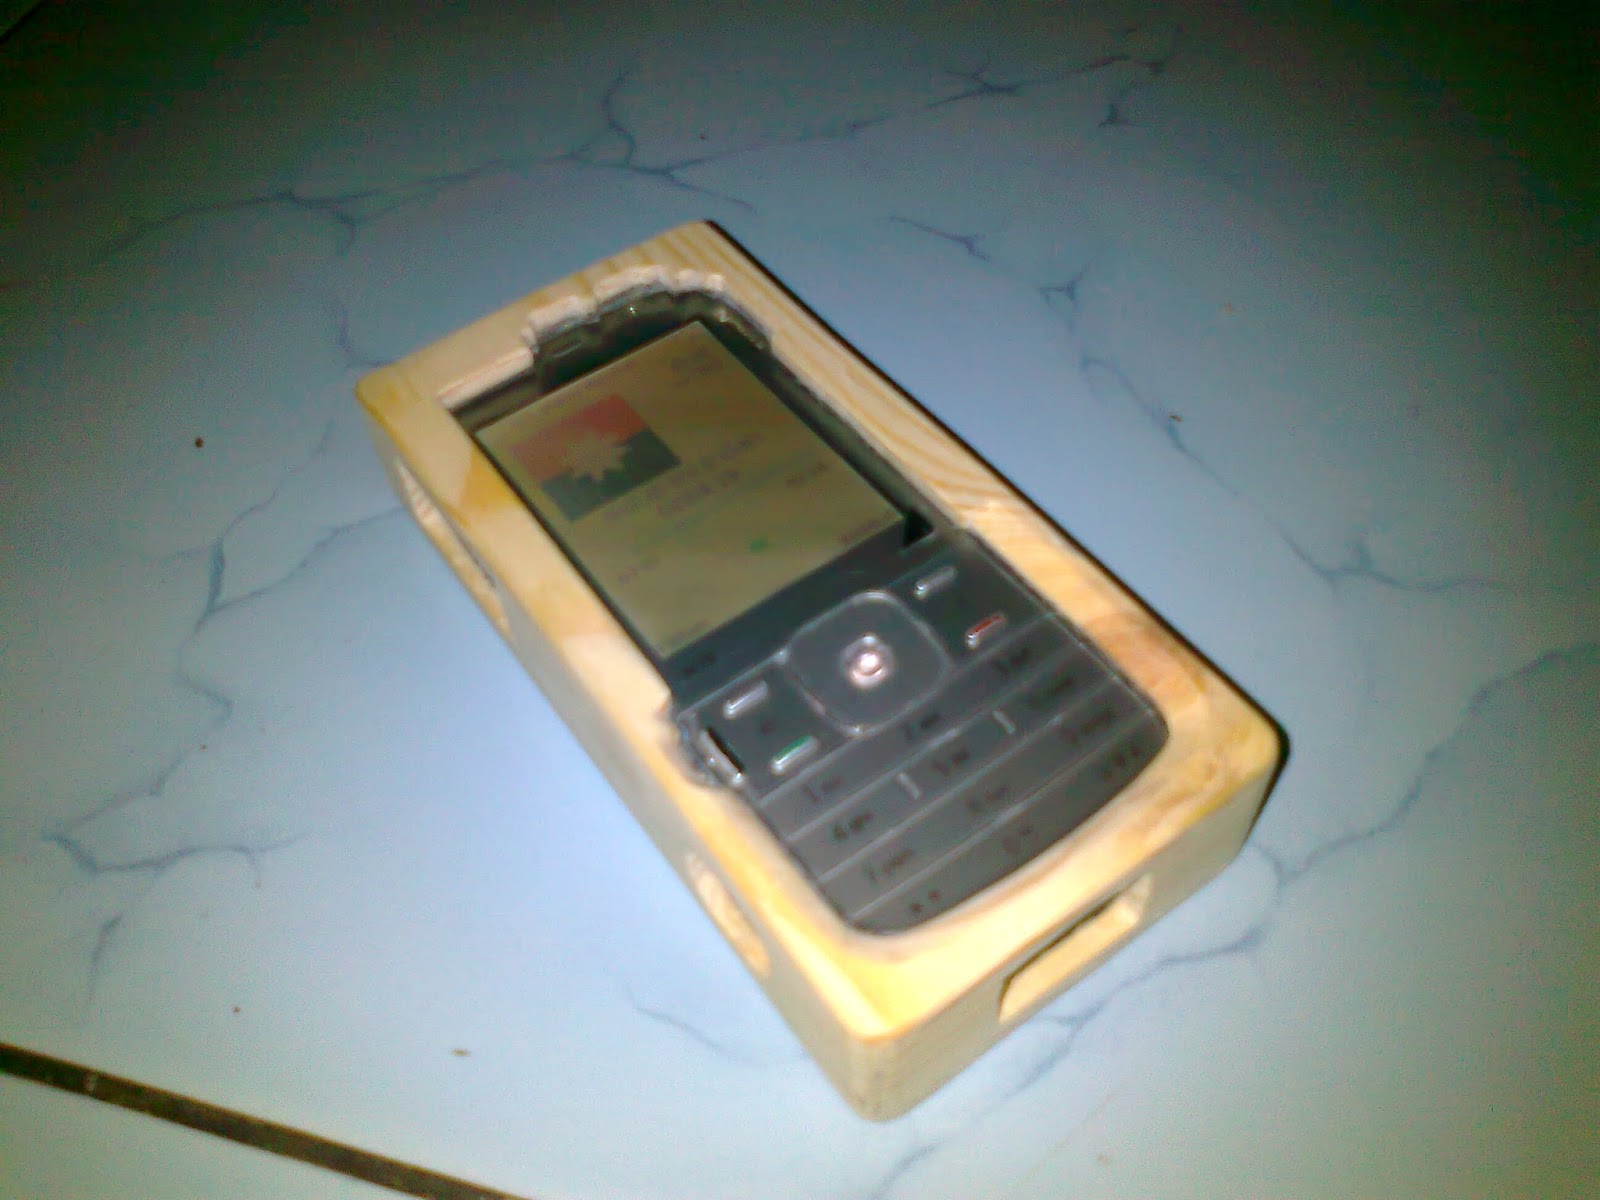  Cara Membuat Casing Hp Dari Kayu  Wooden Smartphone Case 